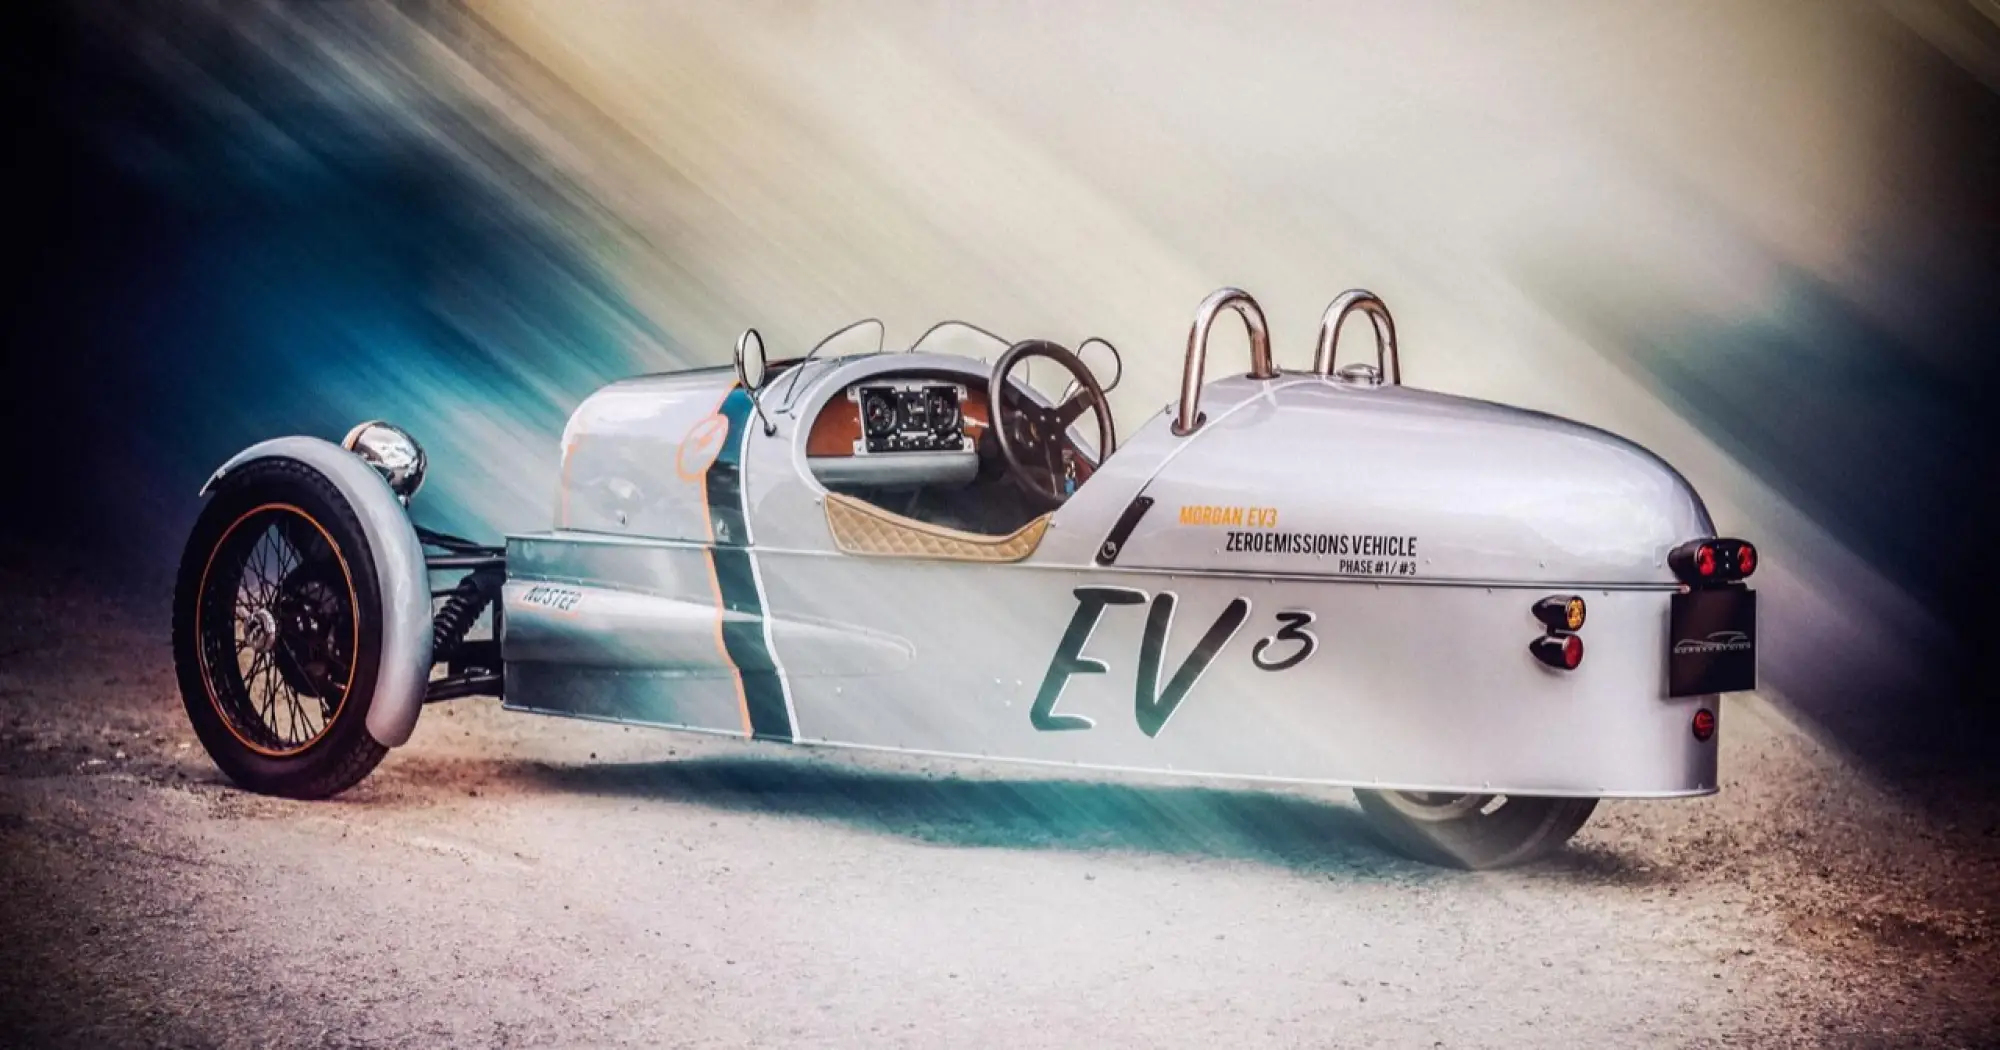 Morgan EV3 concept - 1